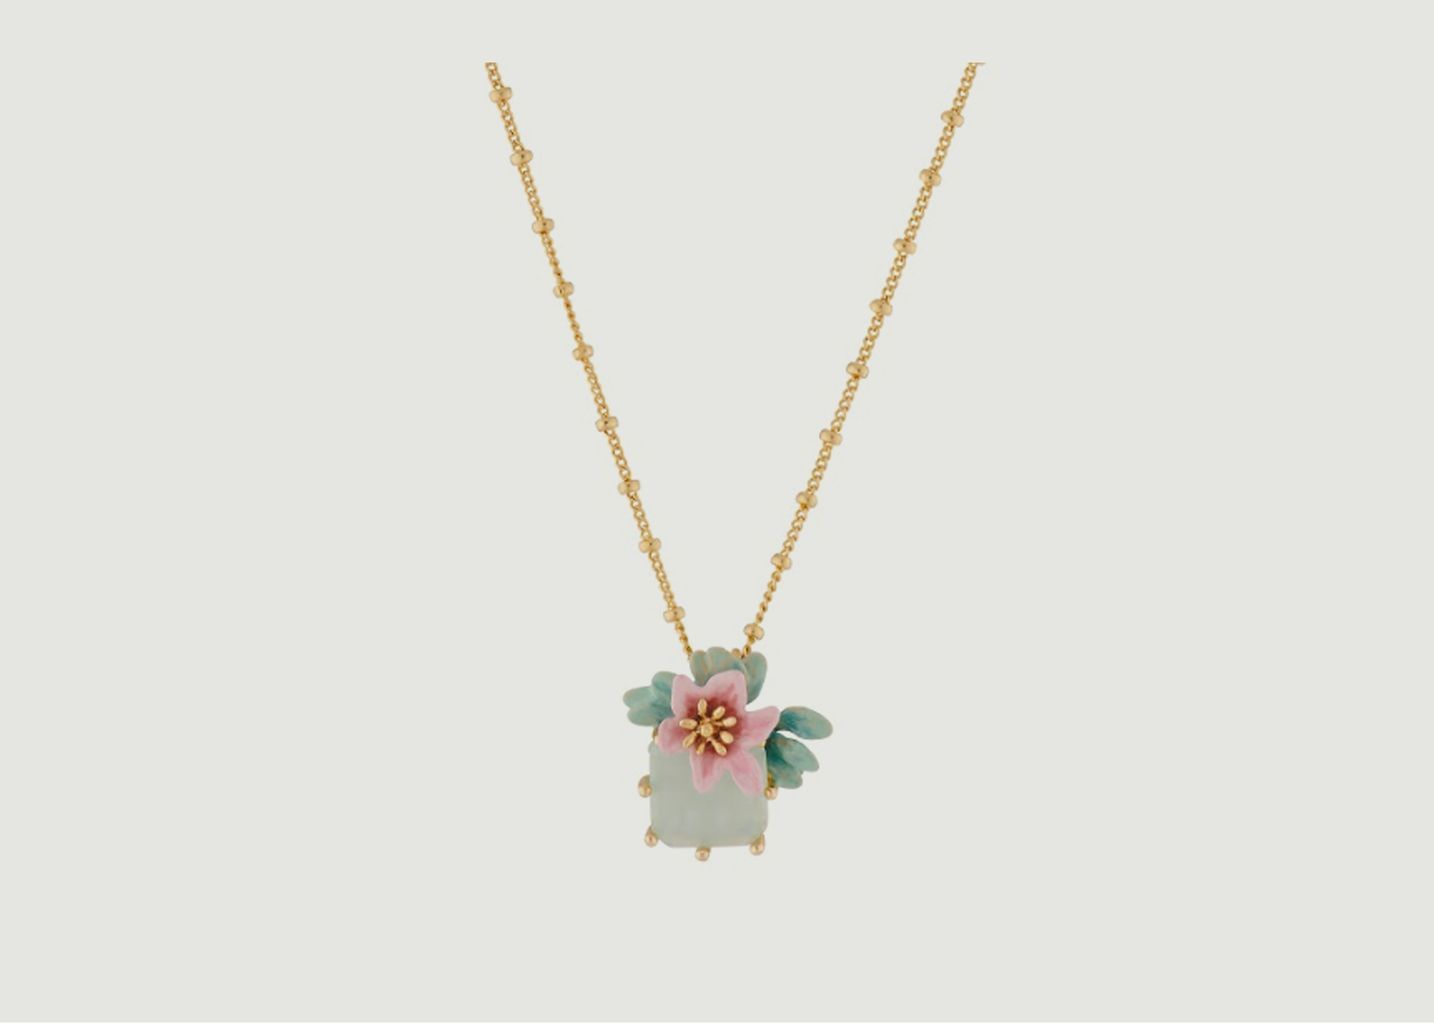 Lemon flower necklace with square stone - Les Néréides